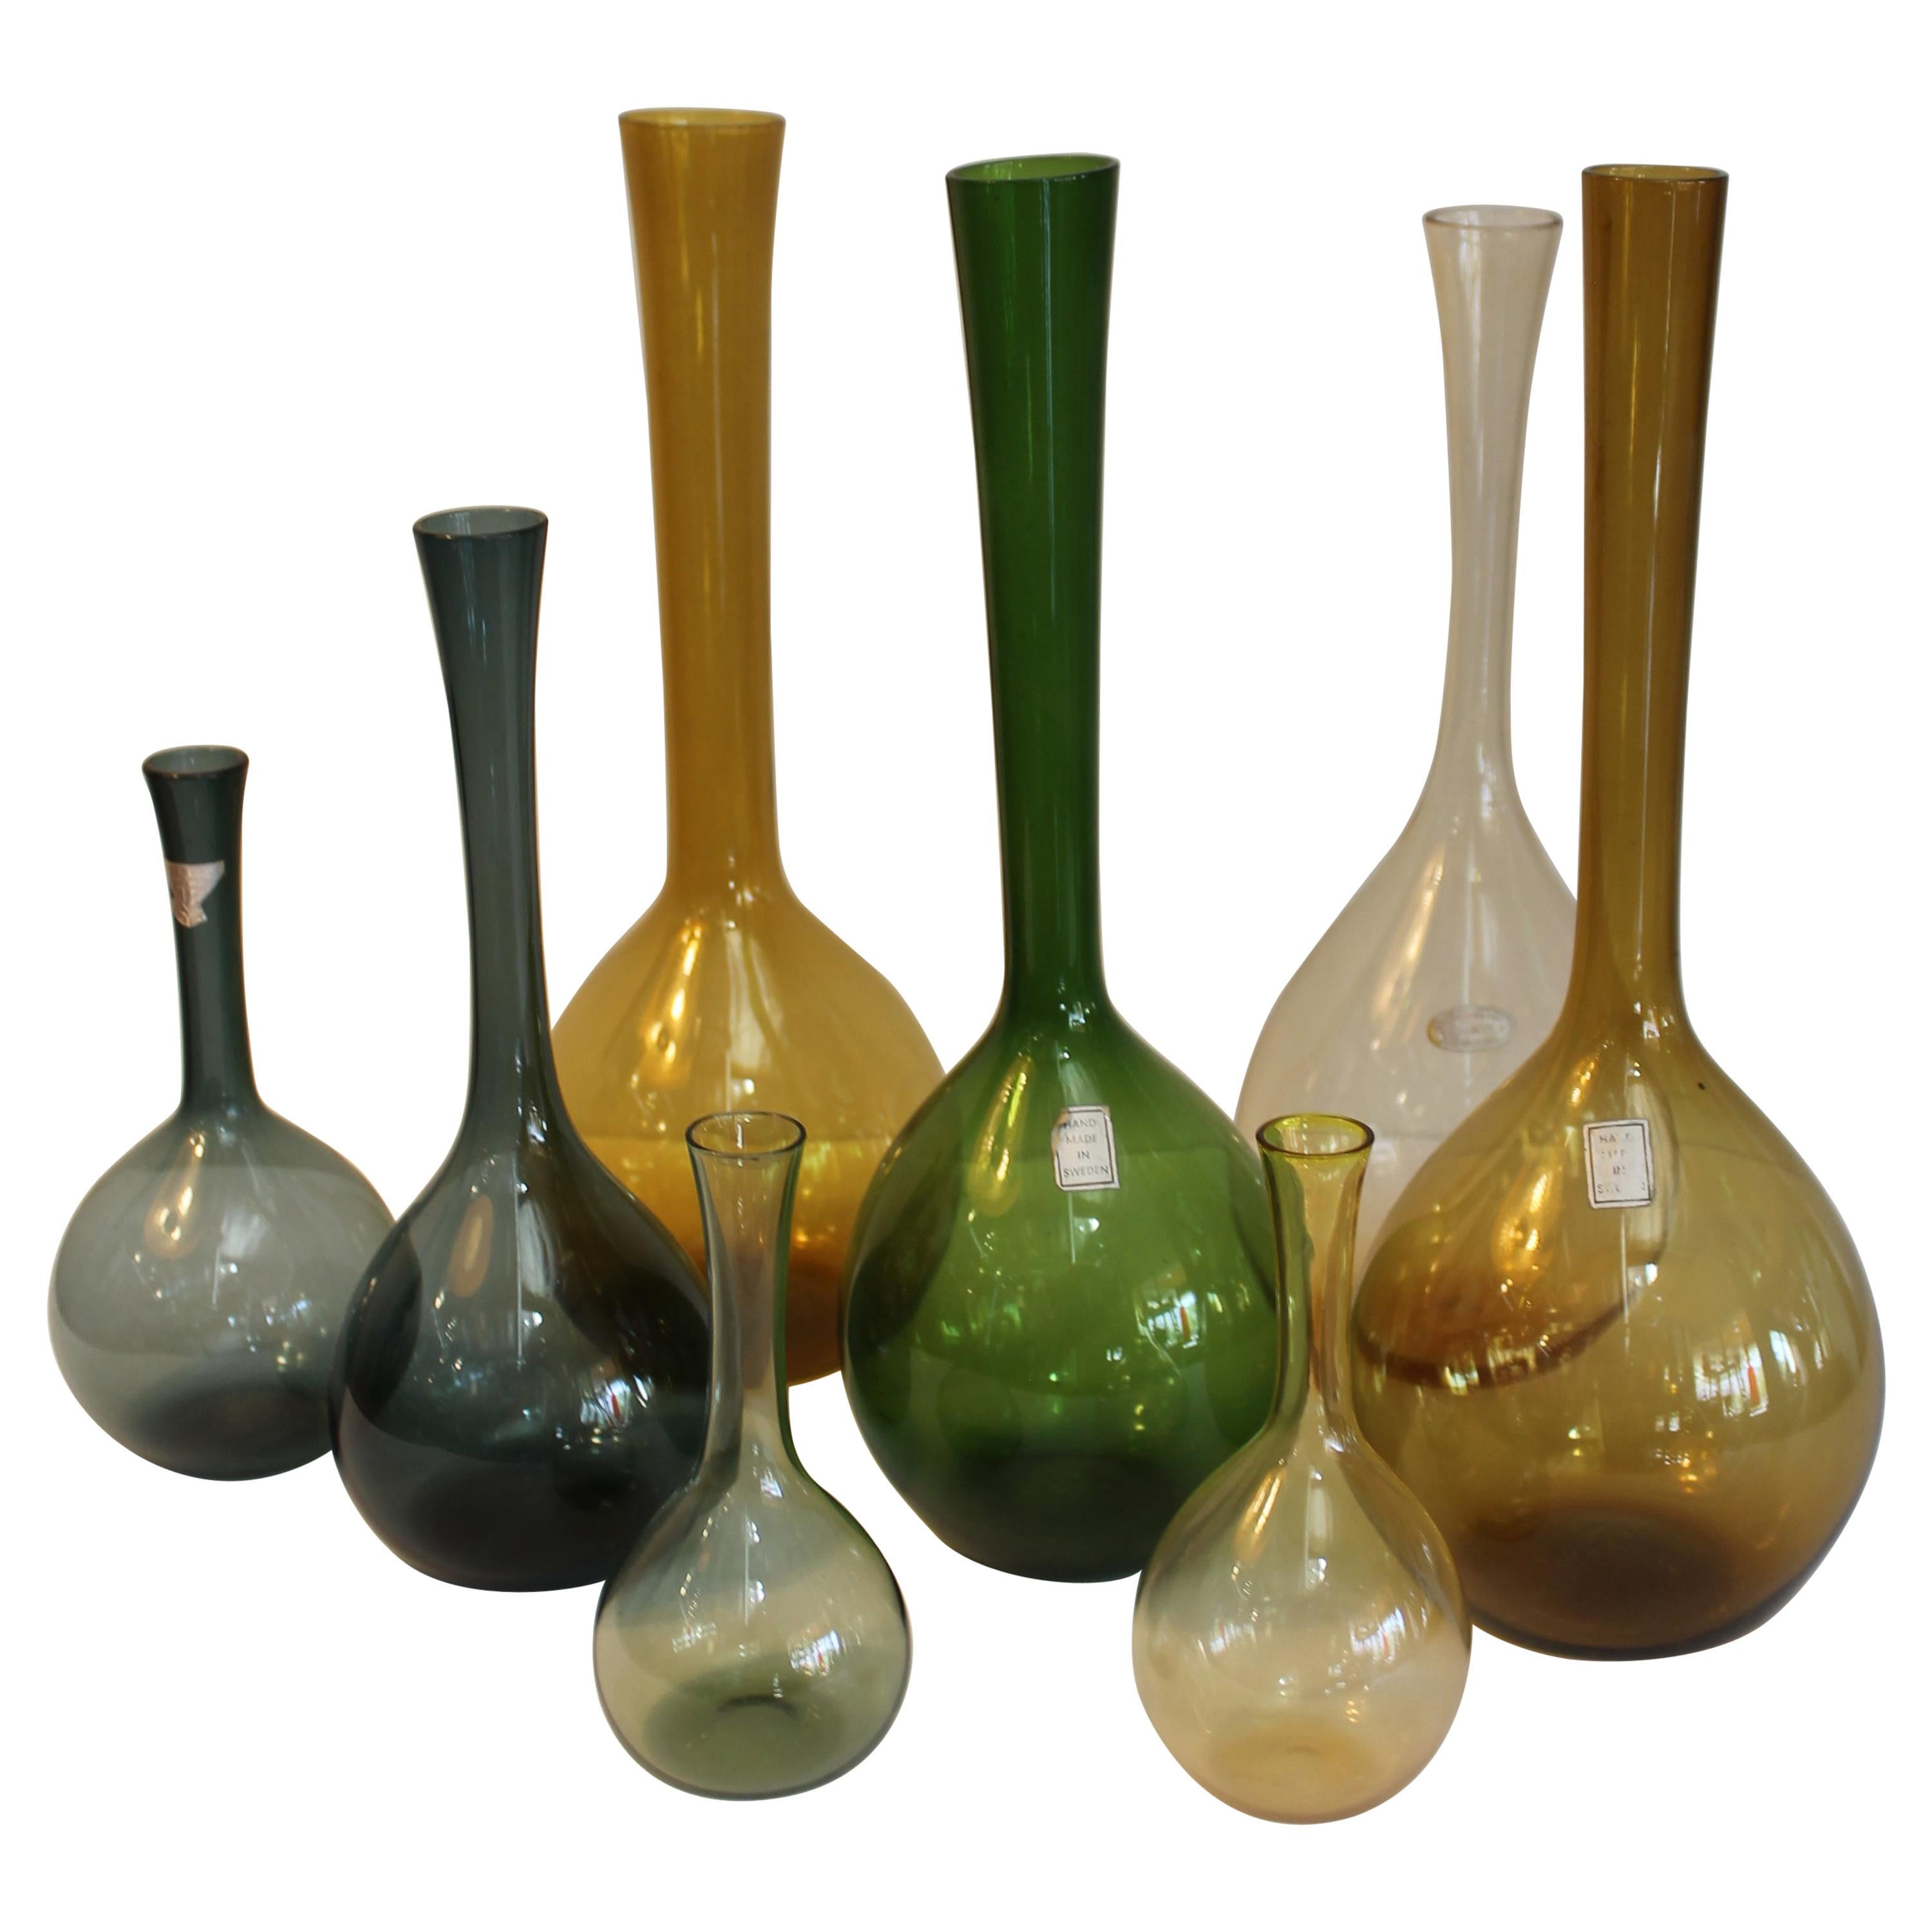 Huit vases suédois conçus par Arthur Percy